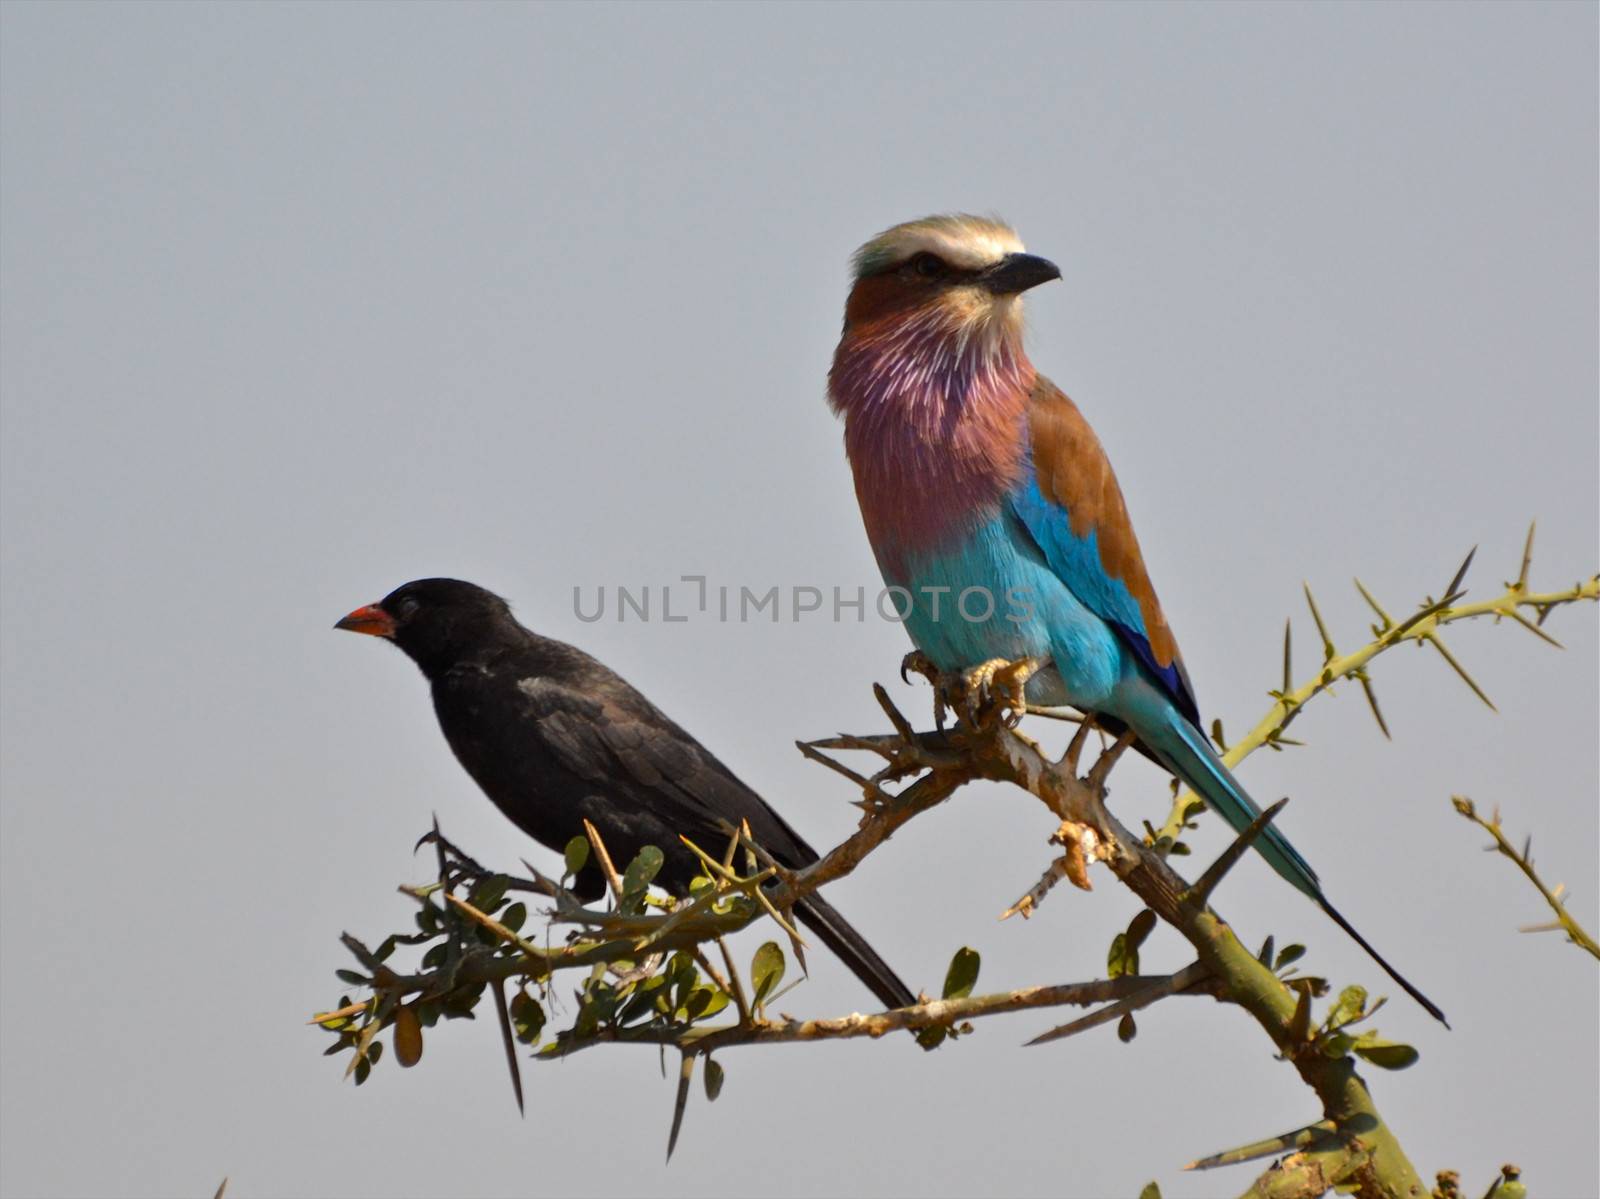 birds of tanzania by moizhusein